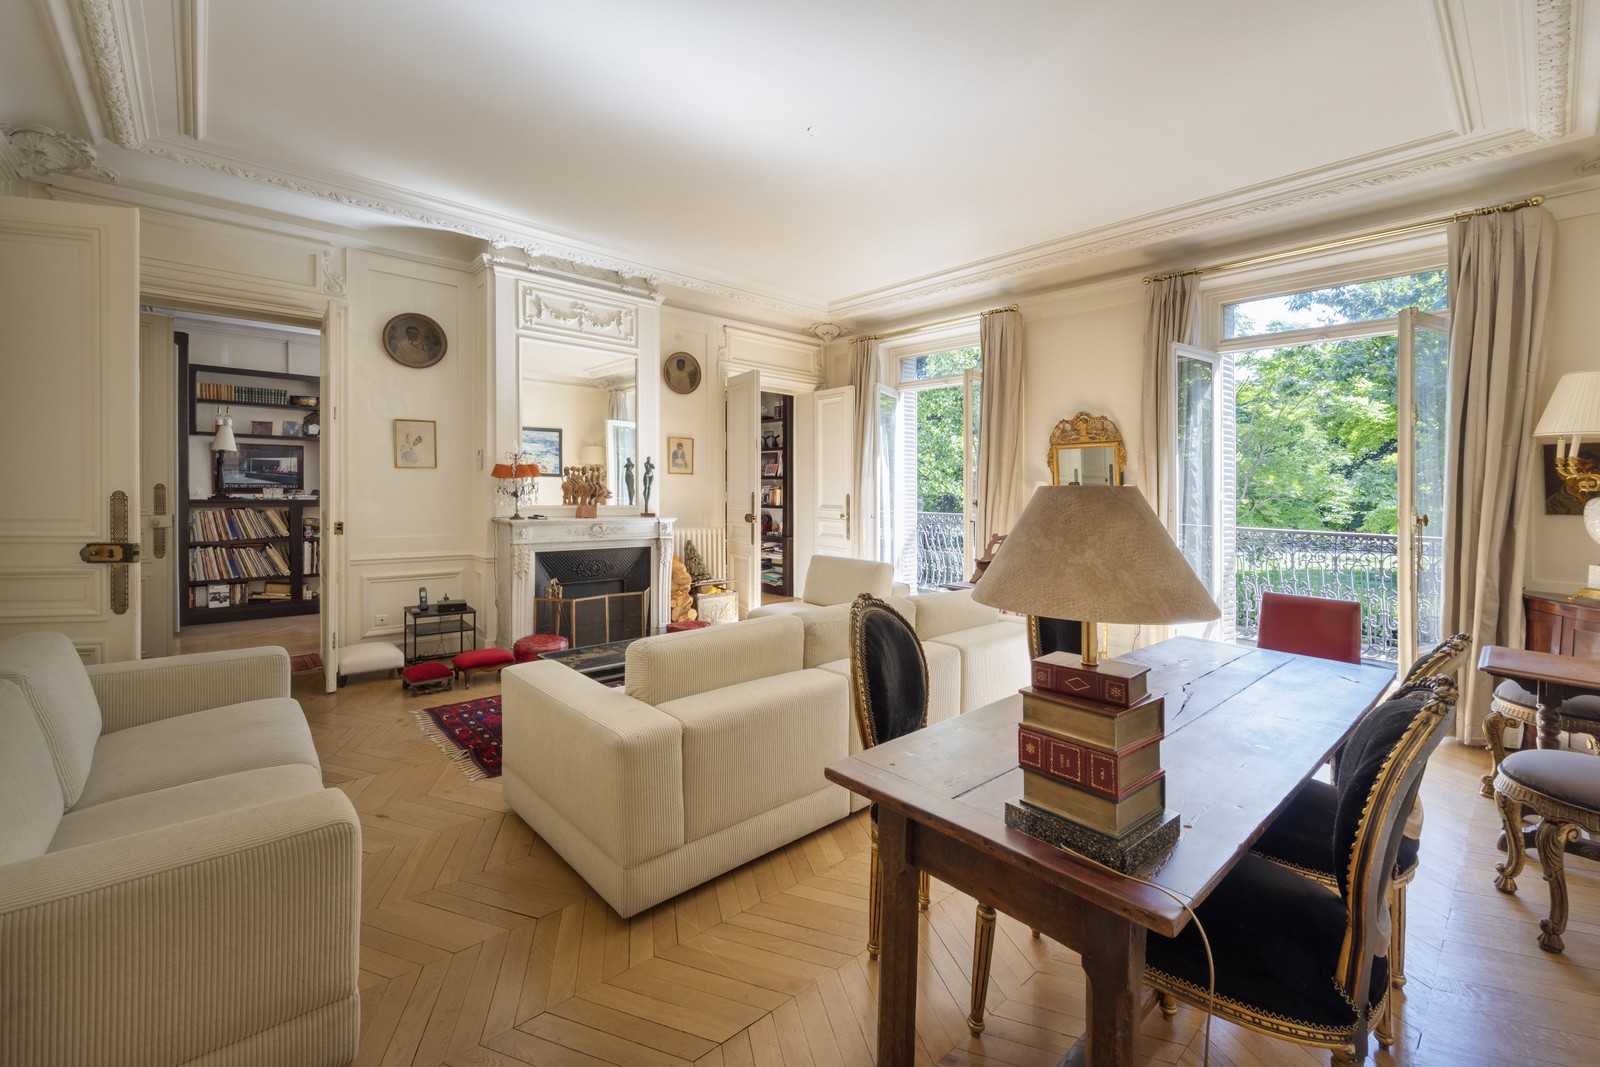 19. Apartments / Flats for Sale at Paris, Paris,75006 France